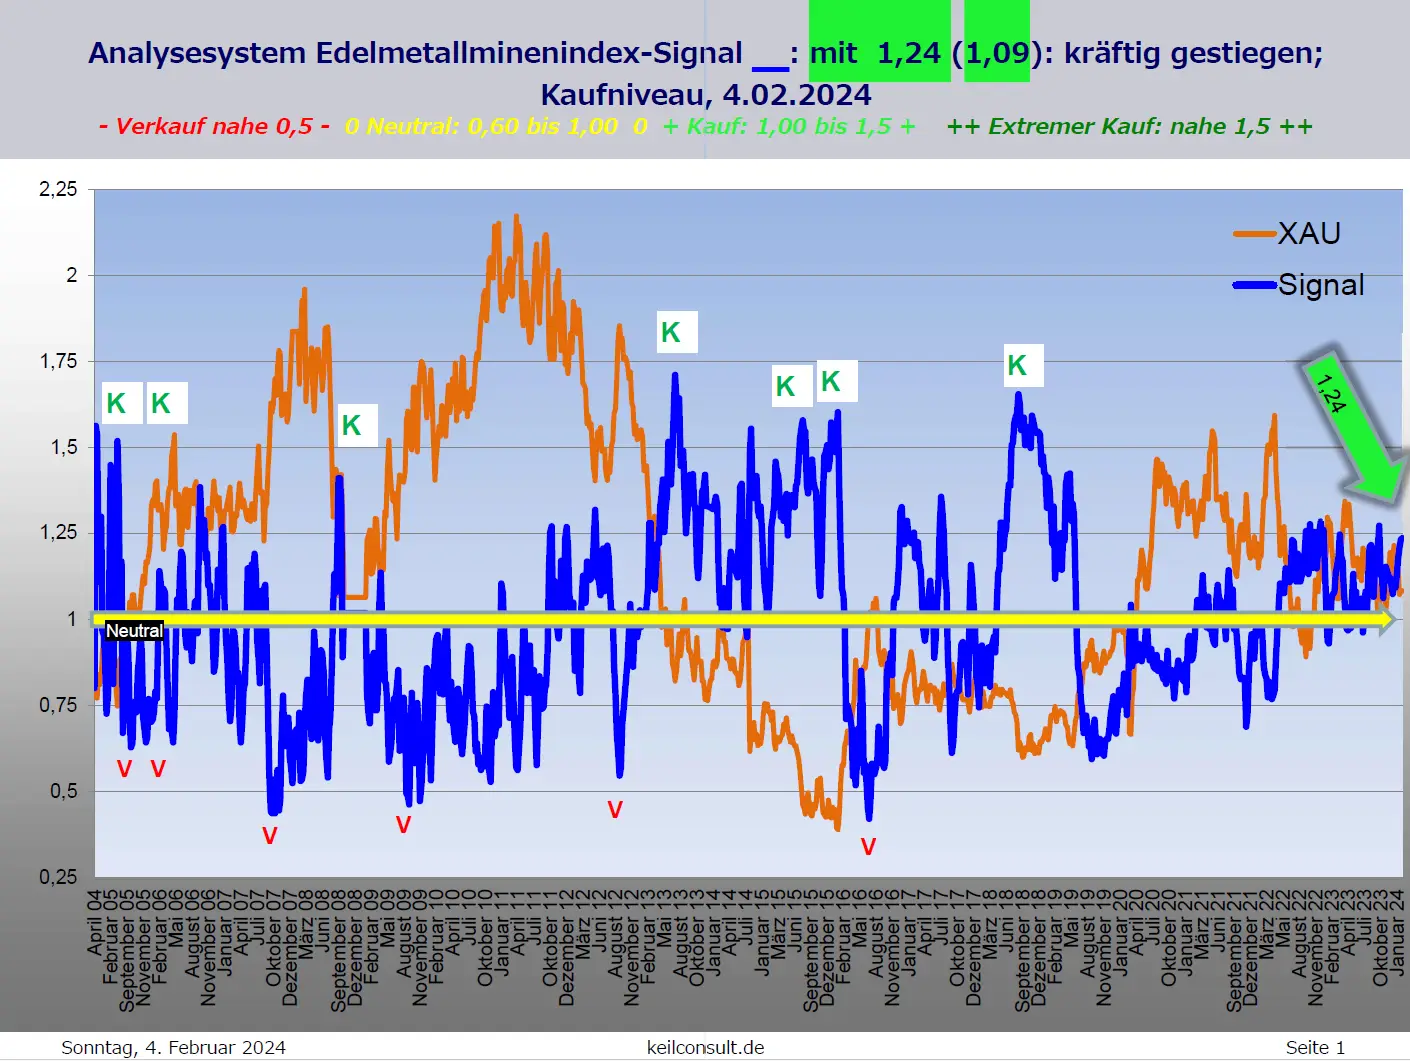 Das Bild zeigt ein Analyse-Diagramm des Edelmetallminenindex-Signals mit verschiedenen Kauf- und Verkaufssignalen, datiert auf den 4. Februar 2024.